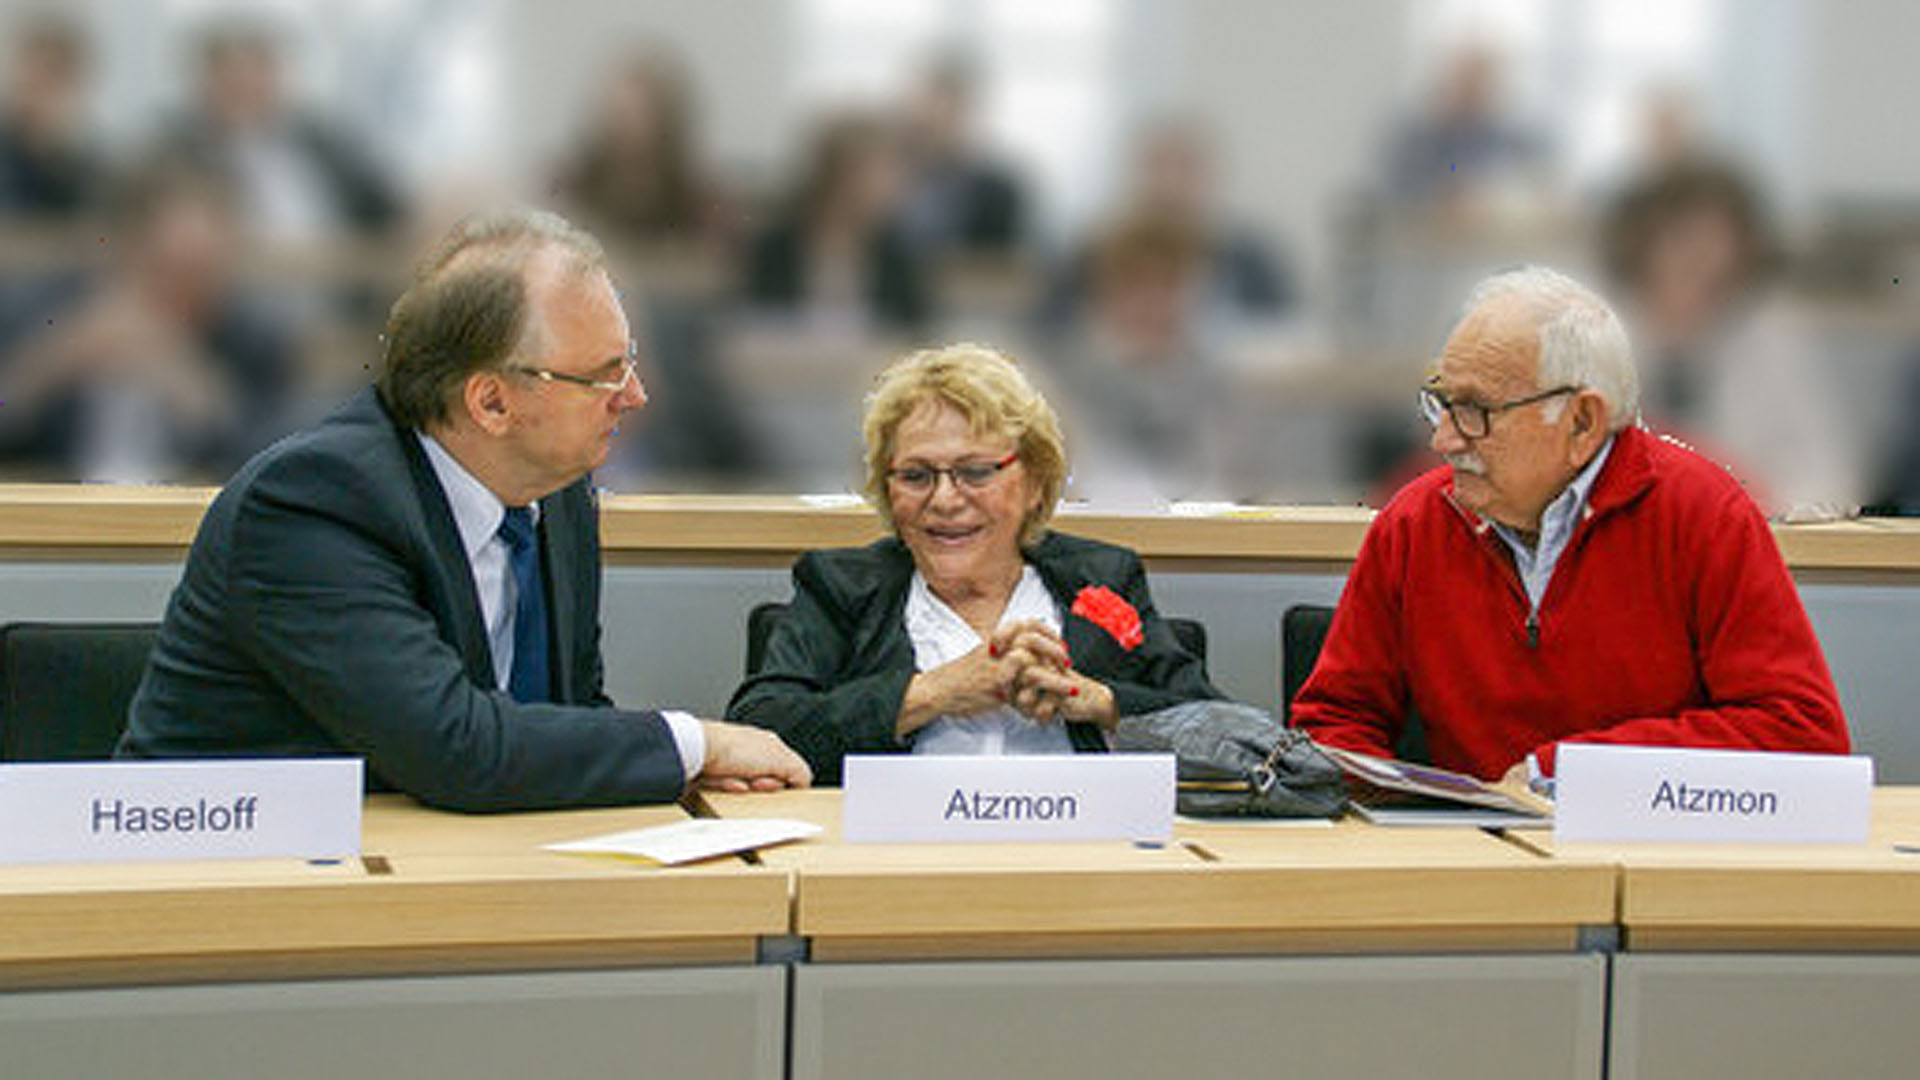 Von ihren Erlebnissen legt Sara Atzmon Zeugnis ab – vor Schülern, aber auch im Landtag von Sachsen-Anhalt